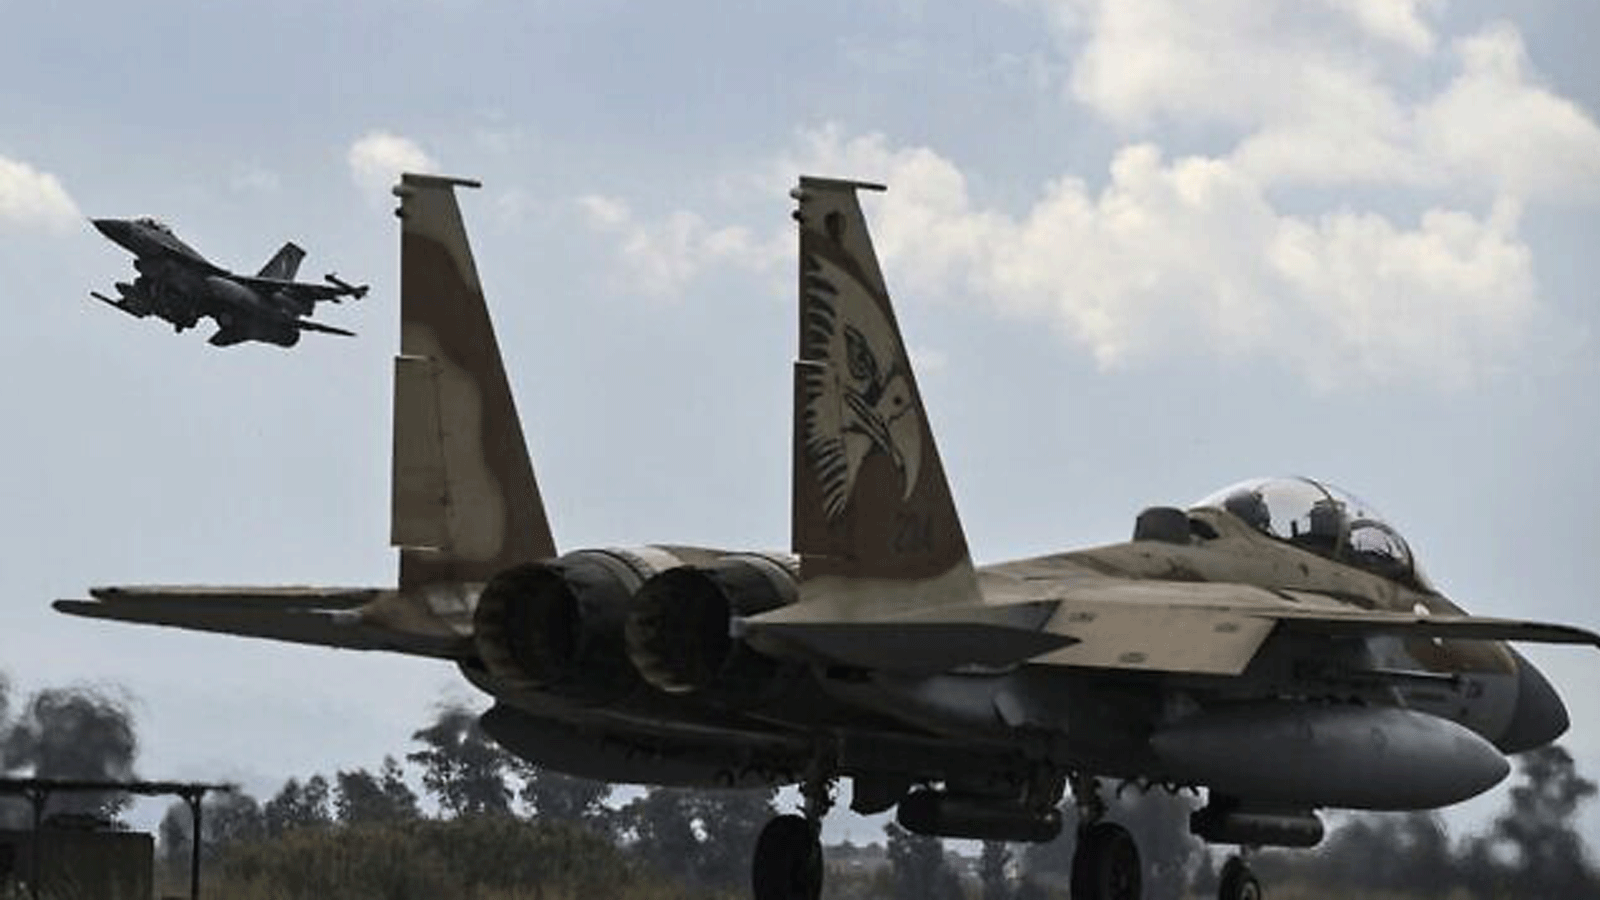  طائرة تابعة لسلاح الجو اليوناني من طراز F-16 تقلع خلف طائرة إسرائيلية من طراز F-15 من مطار أندرافيدا العسكري في جنوب اليونان، كجزء من تمرين الطيران متعدد الجنسيات التابع لسلاح الجو اليوناني 